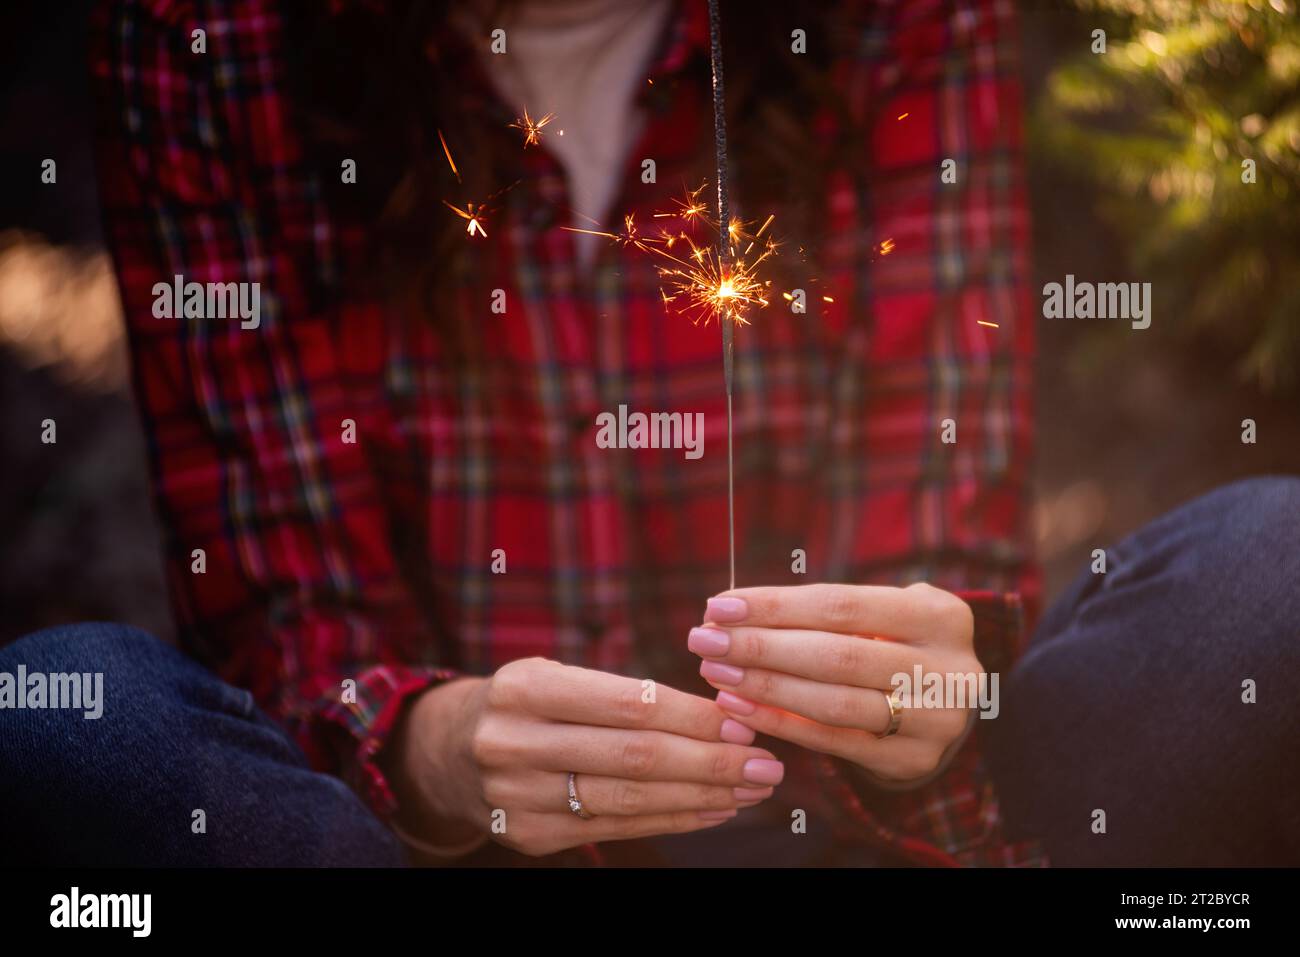 Brillante sparkler brucia nelle mani delle donne. La ragazza in camicia rossa a scacchi sorride. Atmosfera natalizia, Capodanno. Arredamento divertente per le vacanze. Foto Stock